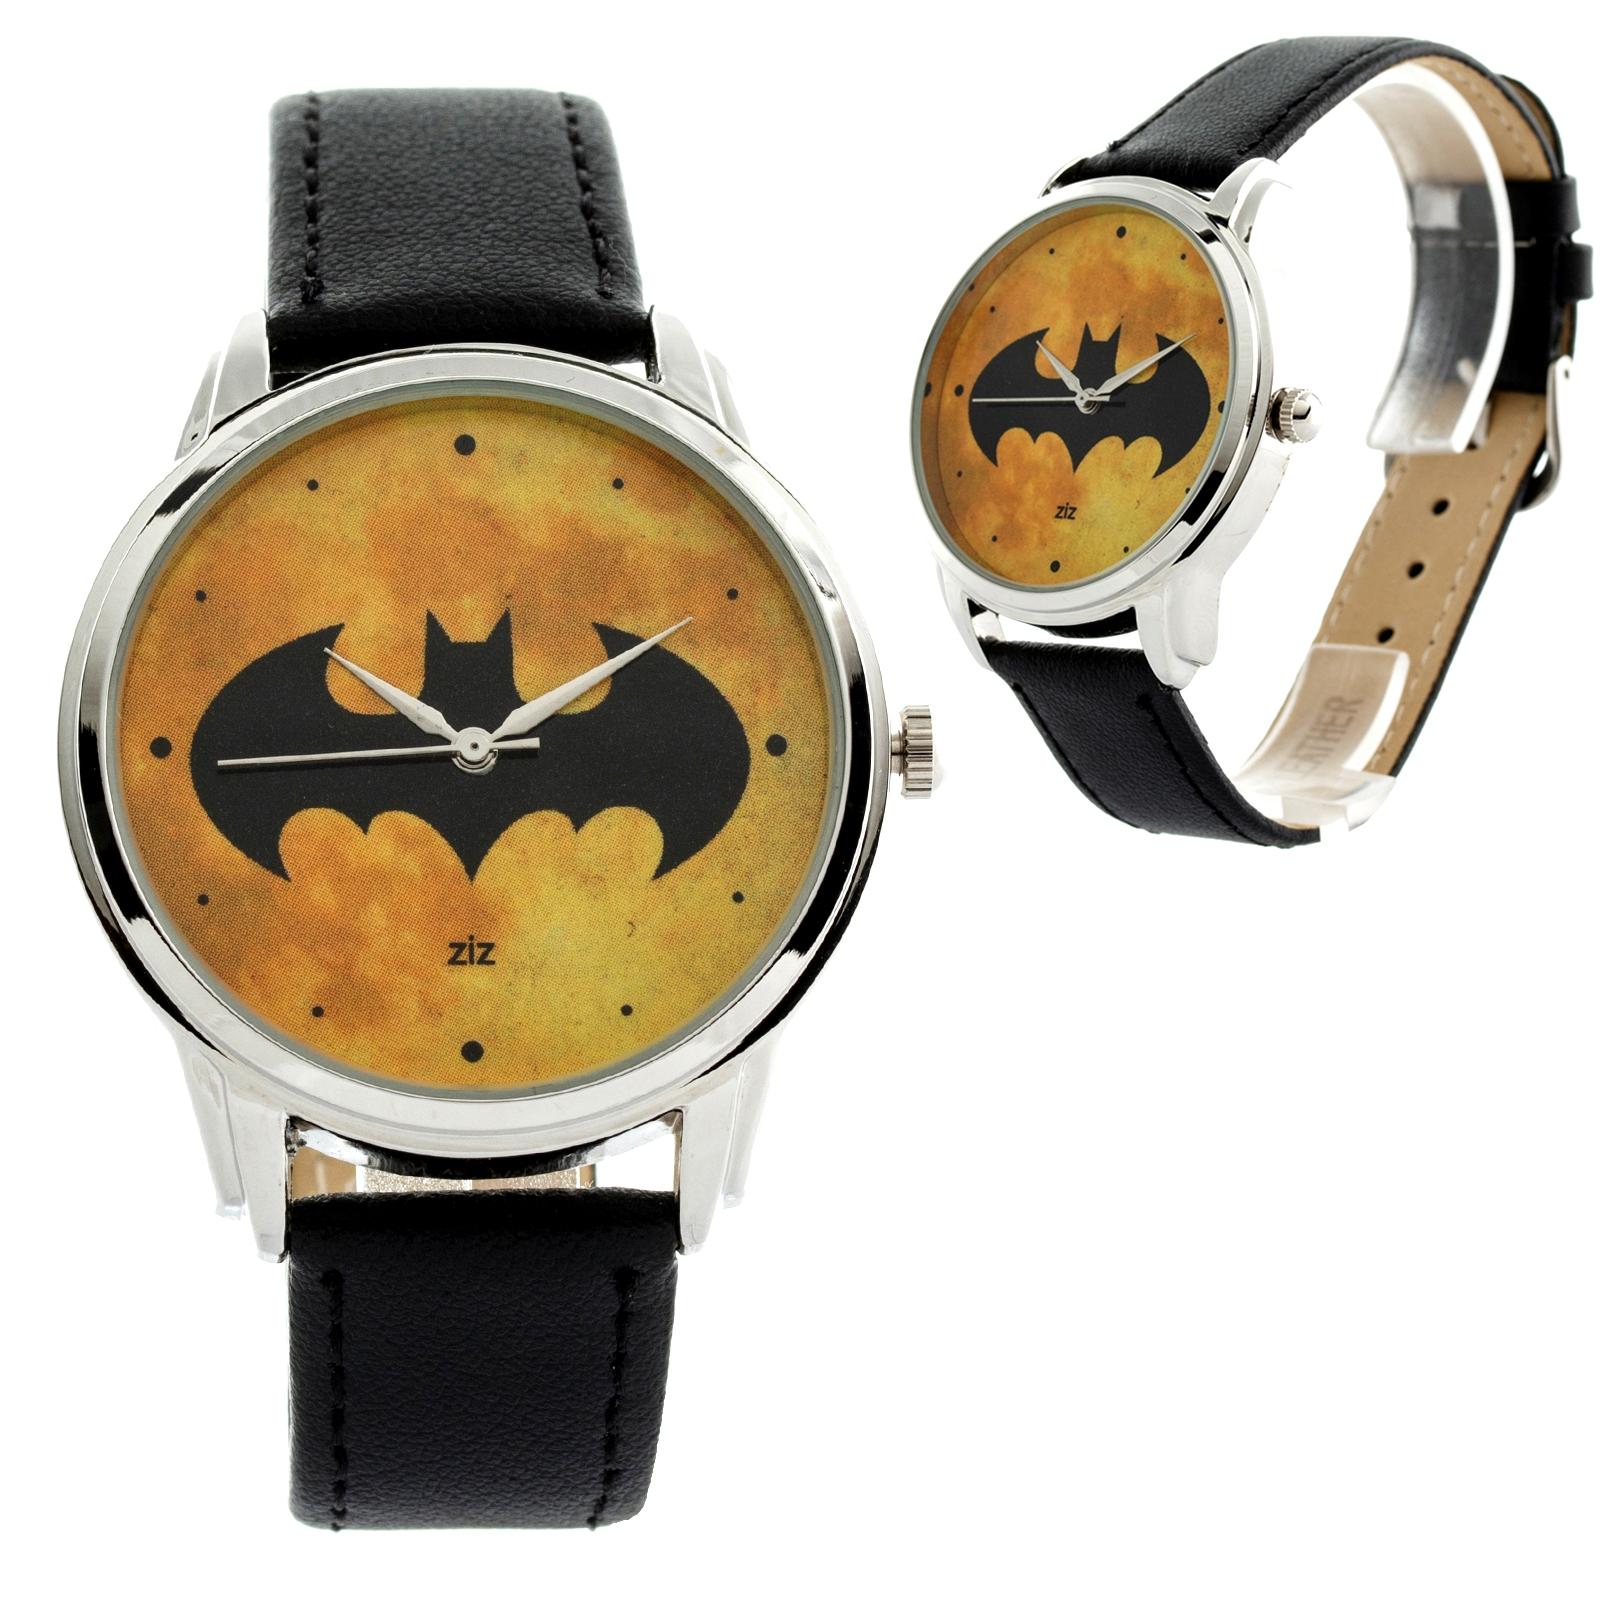 Купить Наручные часы ZIZ Batman